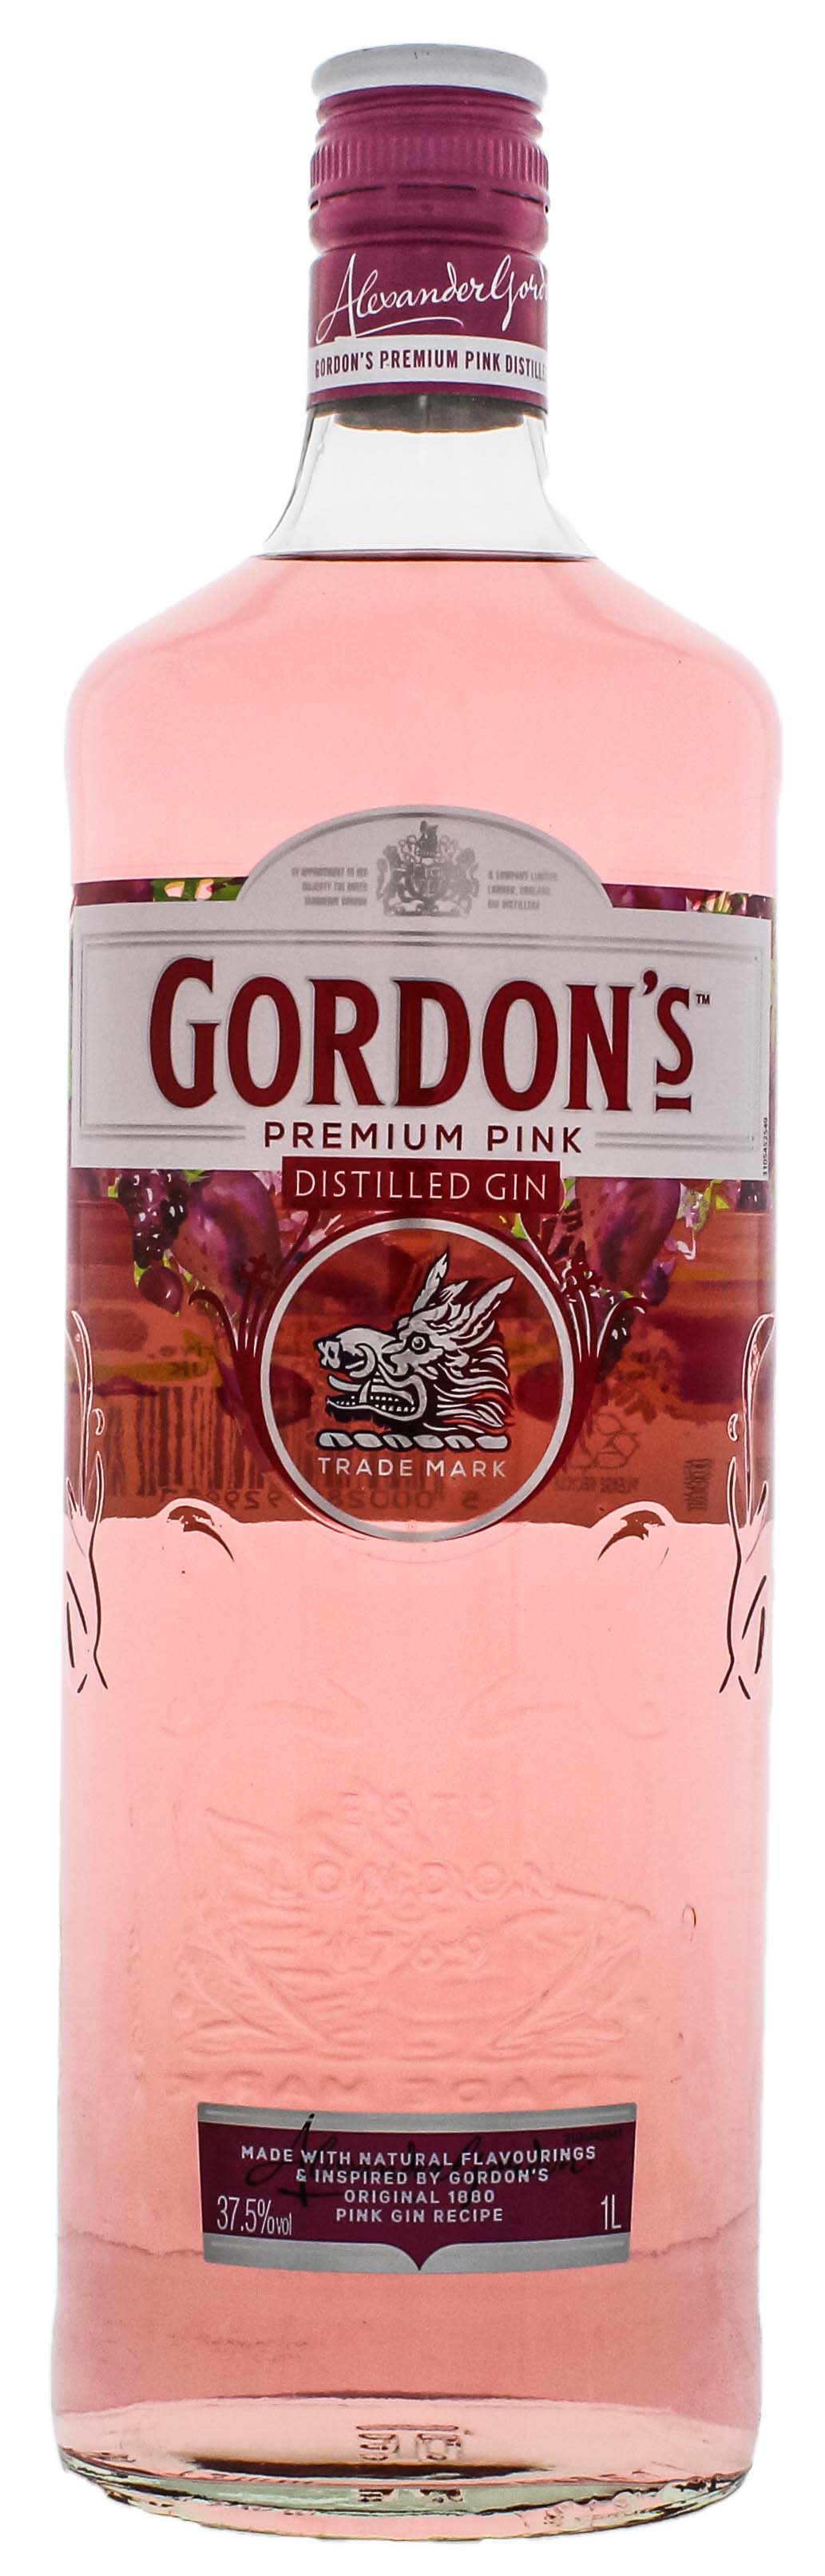 Gordons Gin Premium Pink 1,0L jetzt kaufen im Drinkology Online Shop!